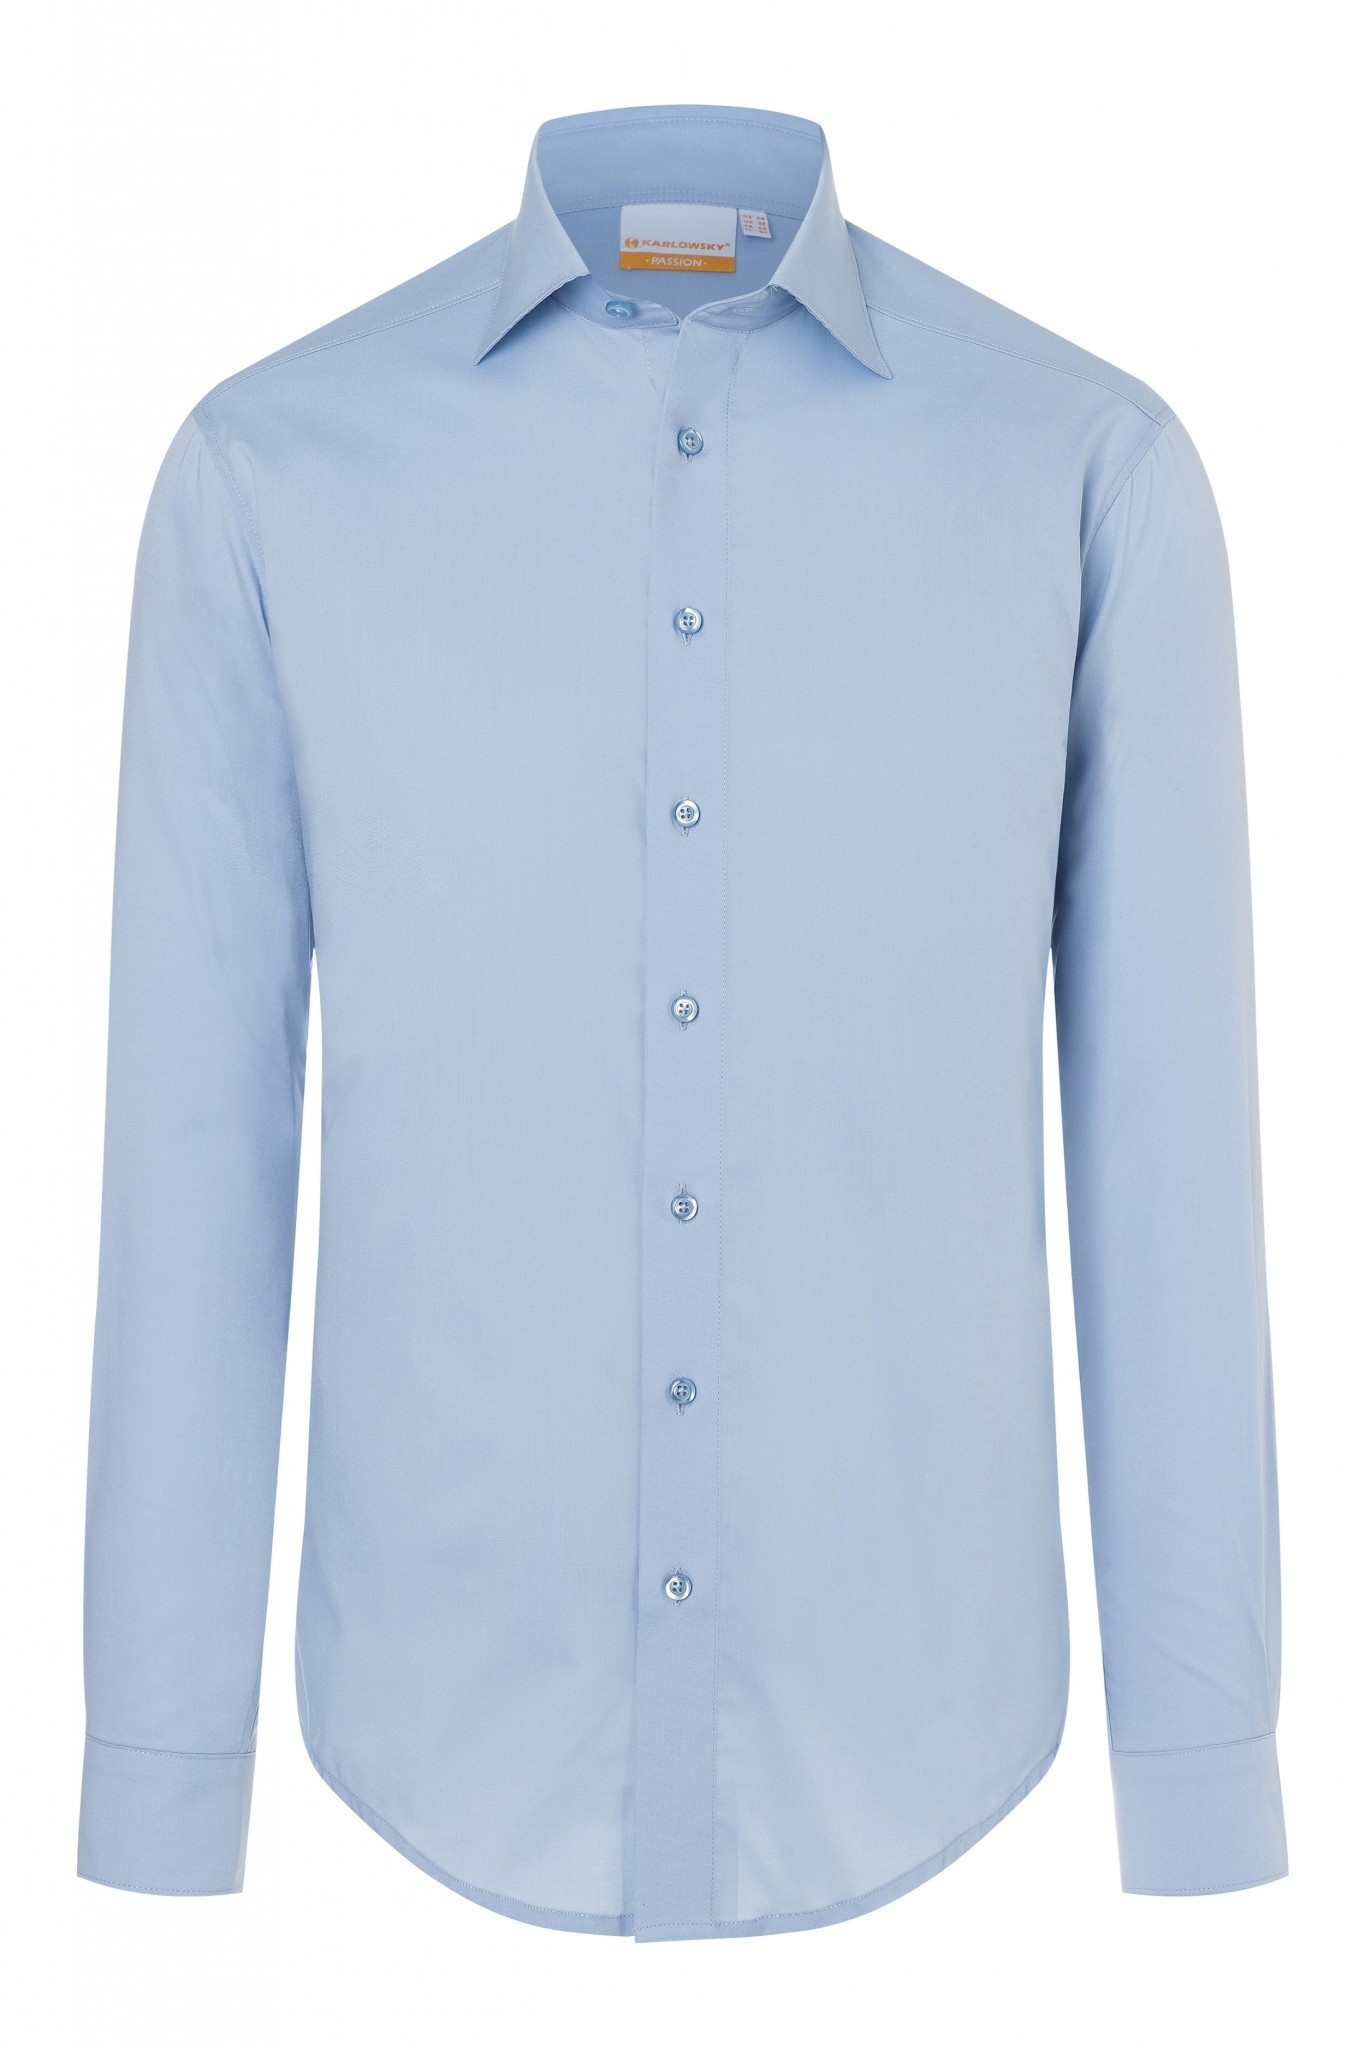 Herrenhemd Miro | Hellblau | 49% Polyester / 49% Baumwolle / 2% Elastolefin | Erhältlich in 8 Größen